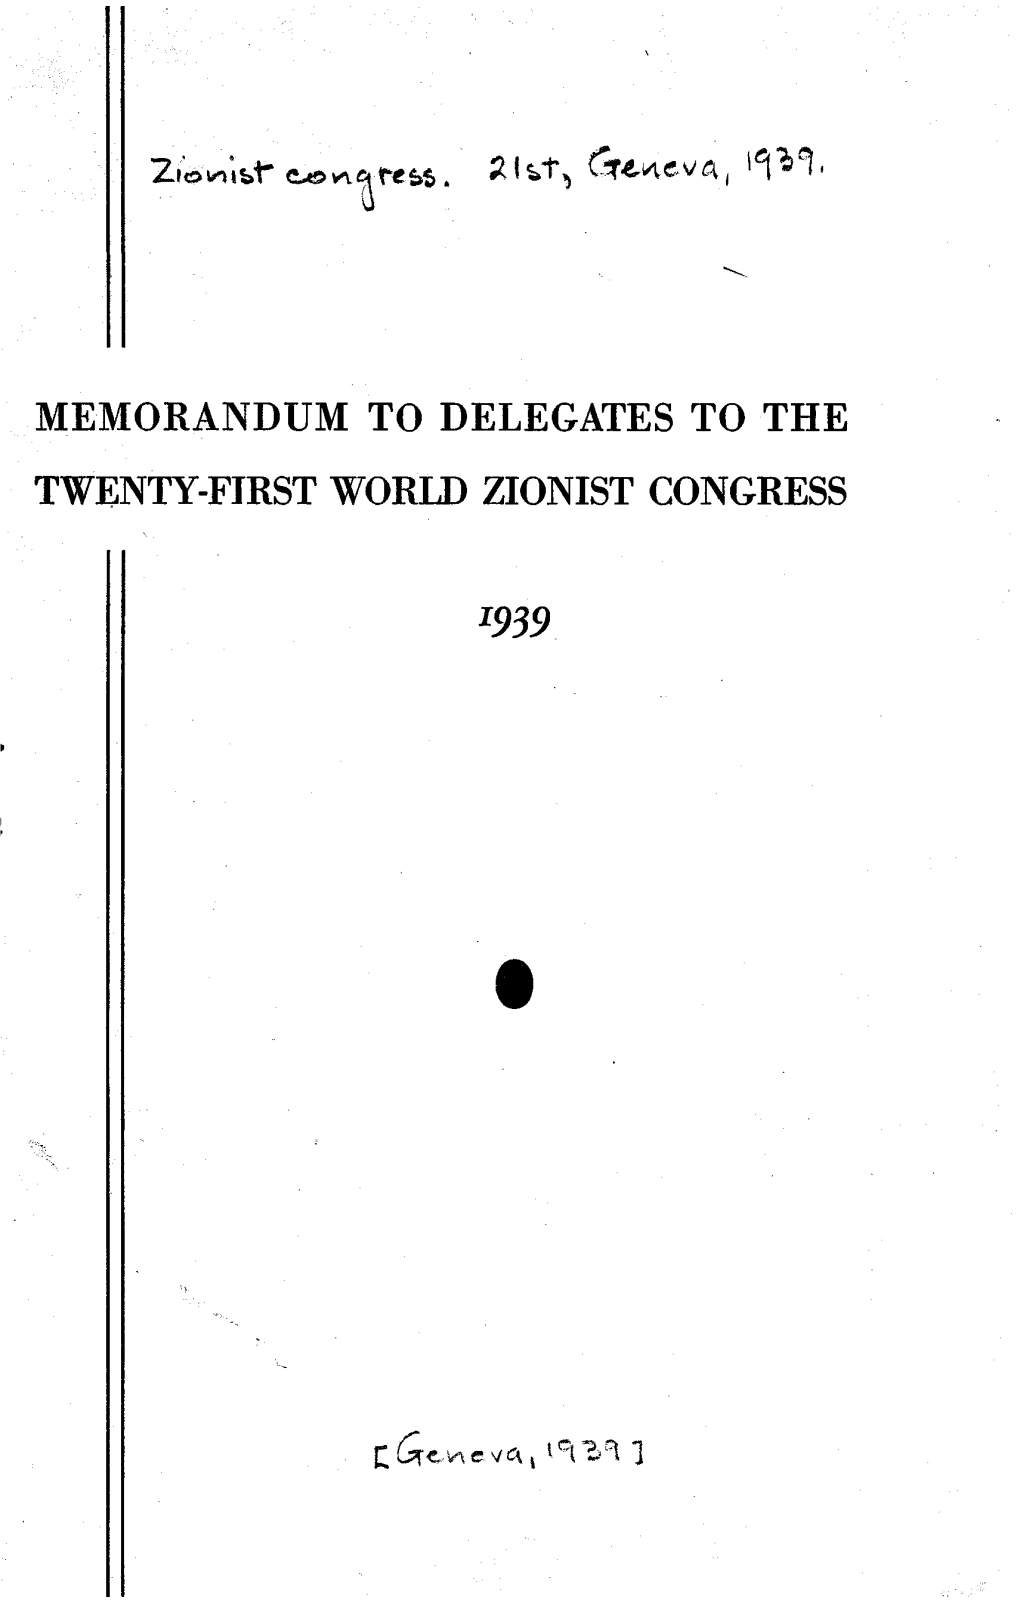 Memorandum to Delegates to the Twenty-First World Zionist Congress